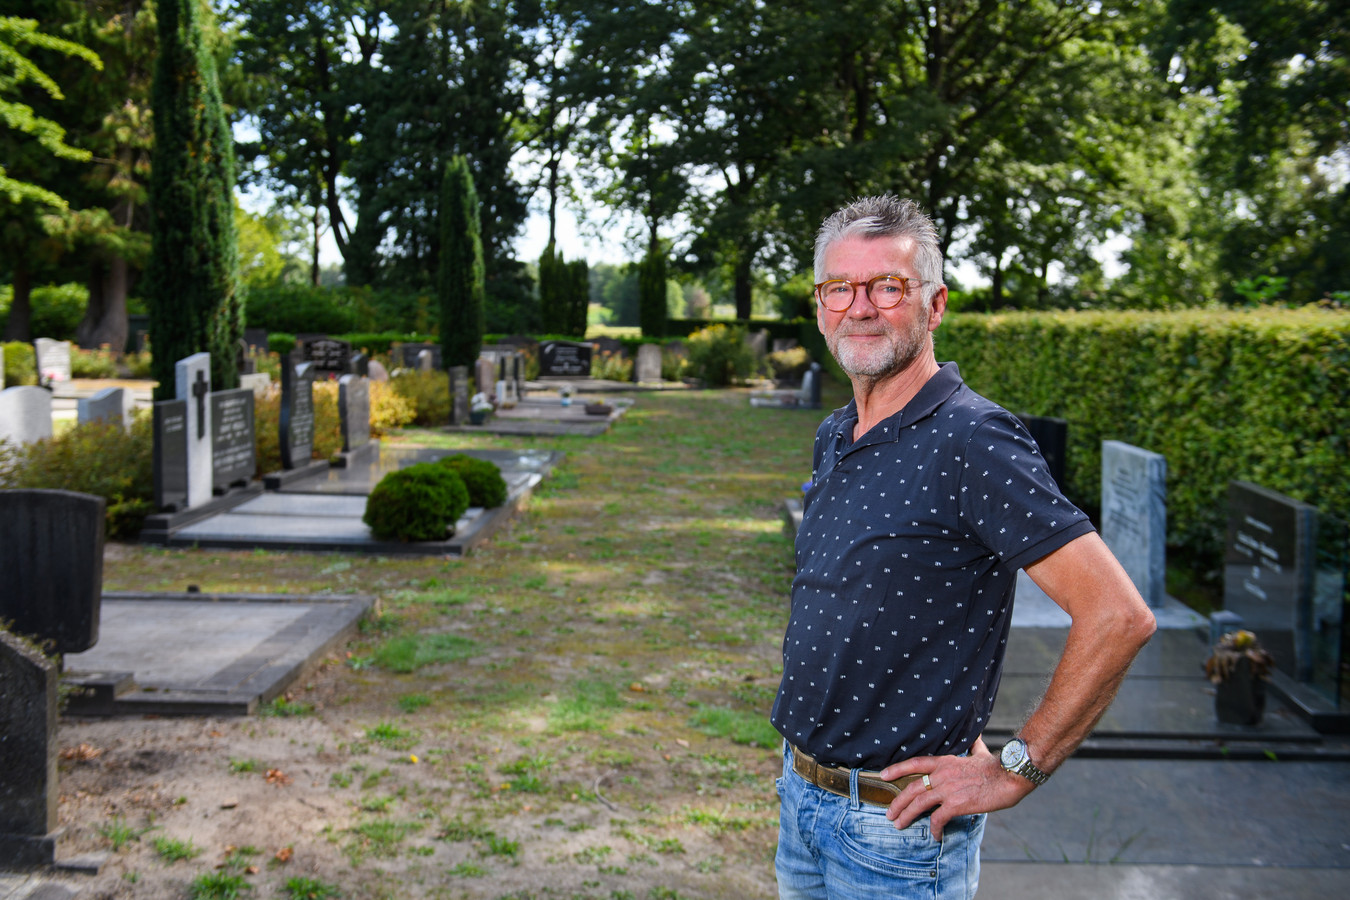 De paden tussen de graven zijn overwoekerd door onkruid. Bertus Wessels, wiens ouders en broertje in Aadorp begraven liggen, vindt het respectloos.